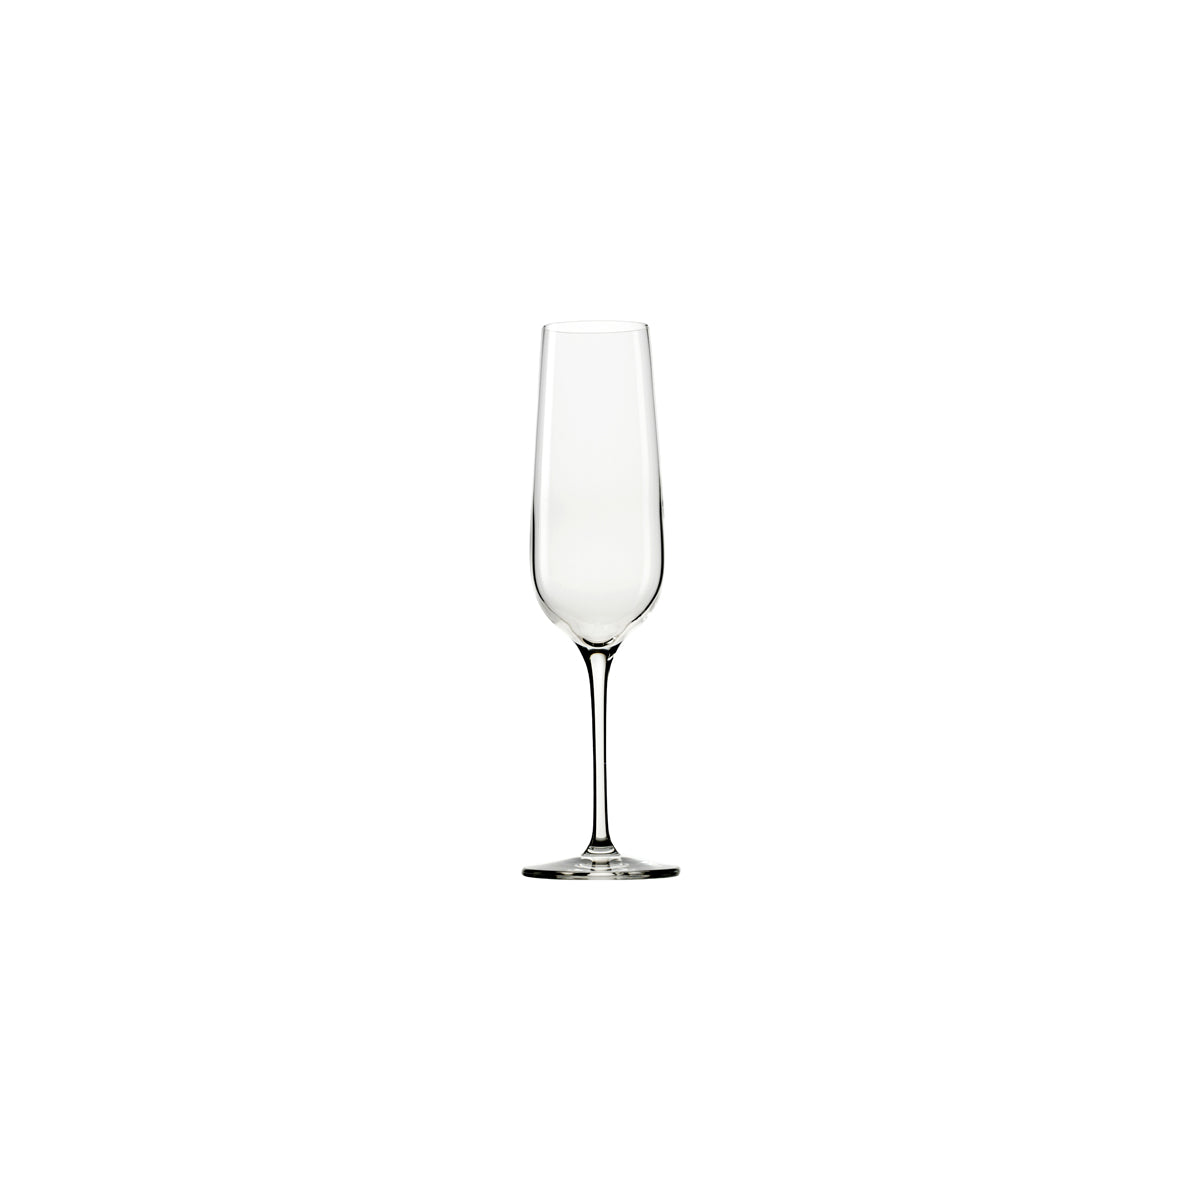 360-925 Stolzle Grandezza Champagne Flute 214ml Tomkin Australia Hospitality Supplies